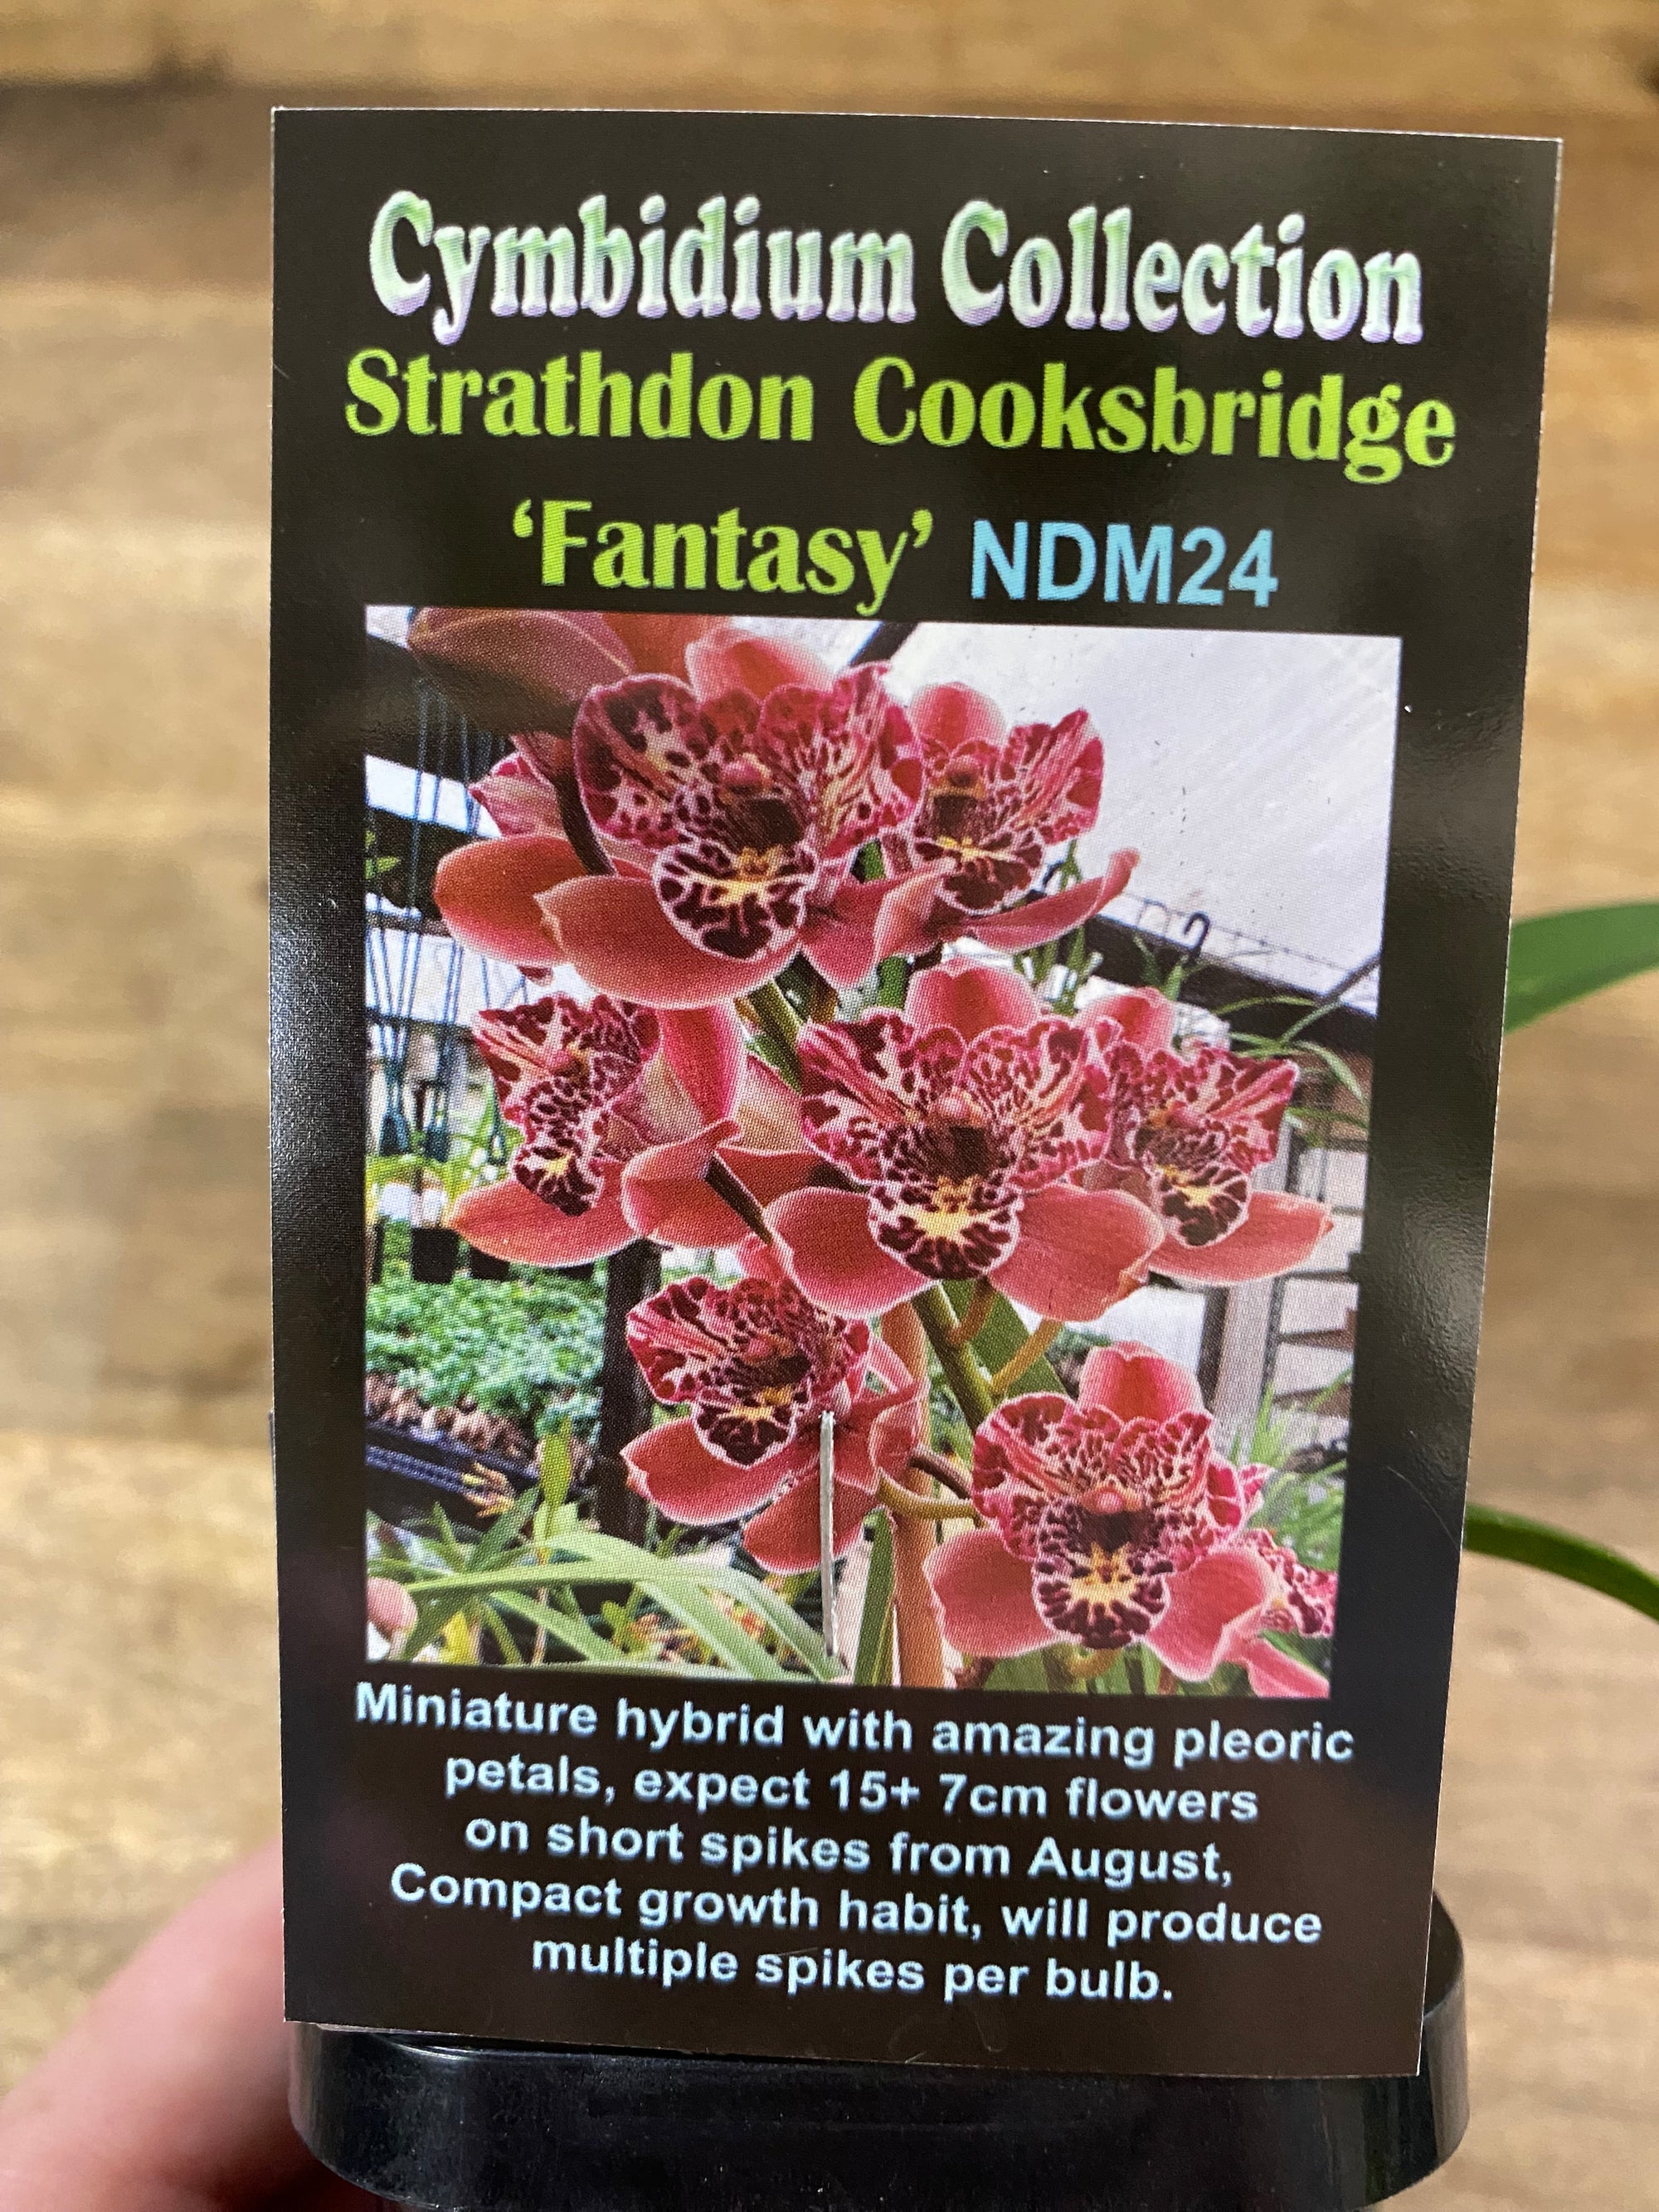 Cymbidium Collection Strathdon Cooksbridge 'Fantasy'